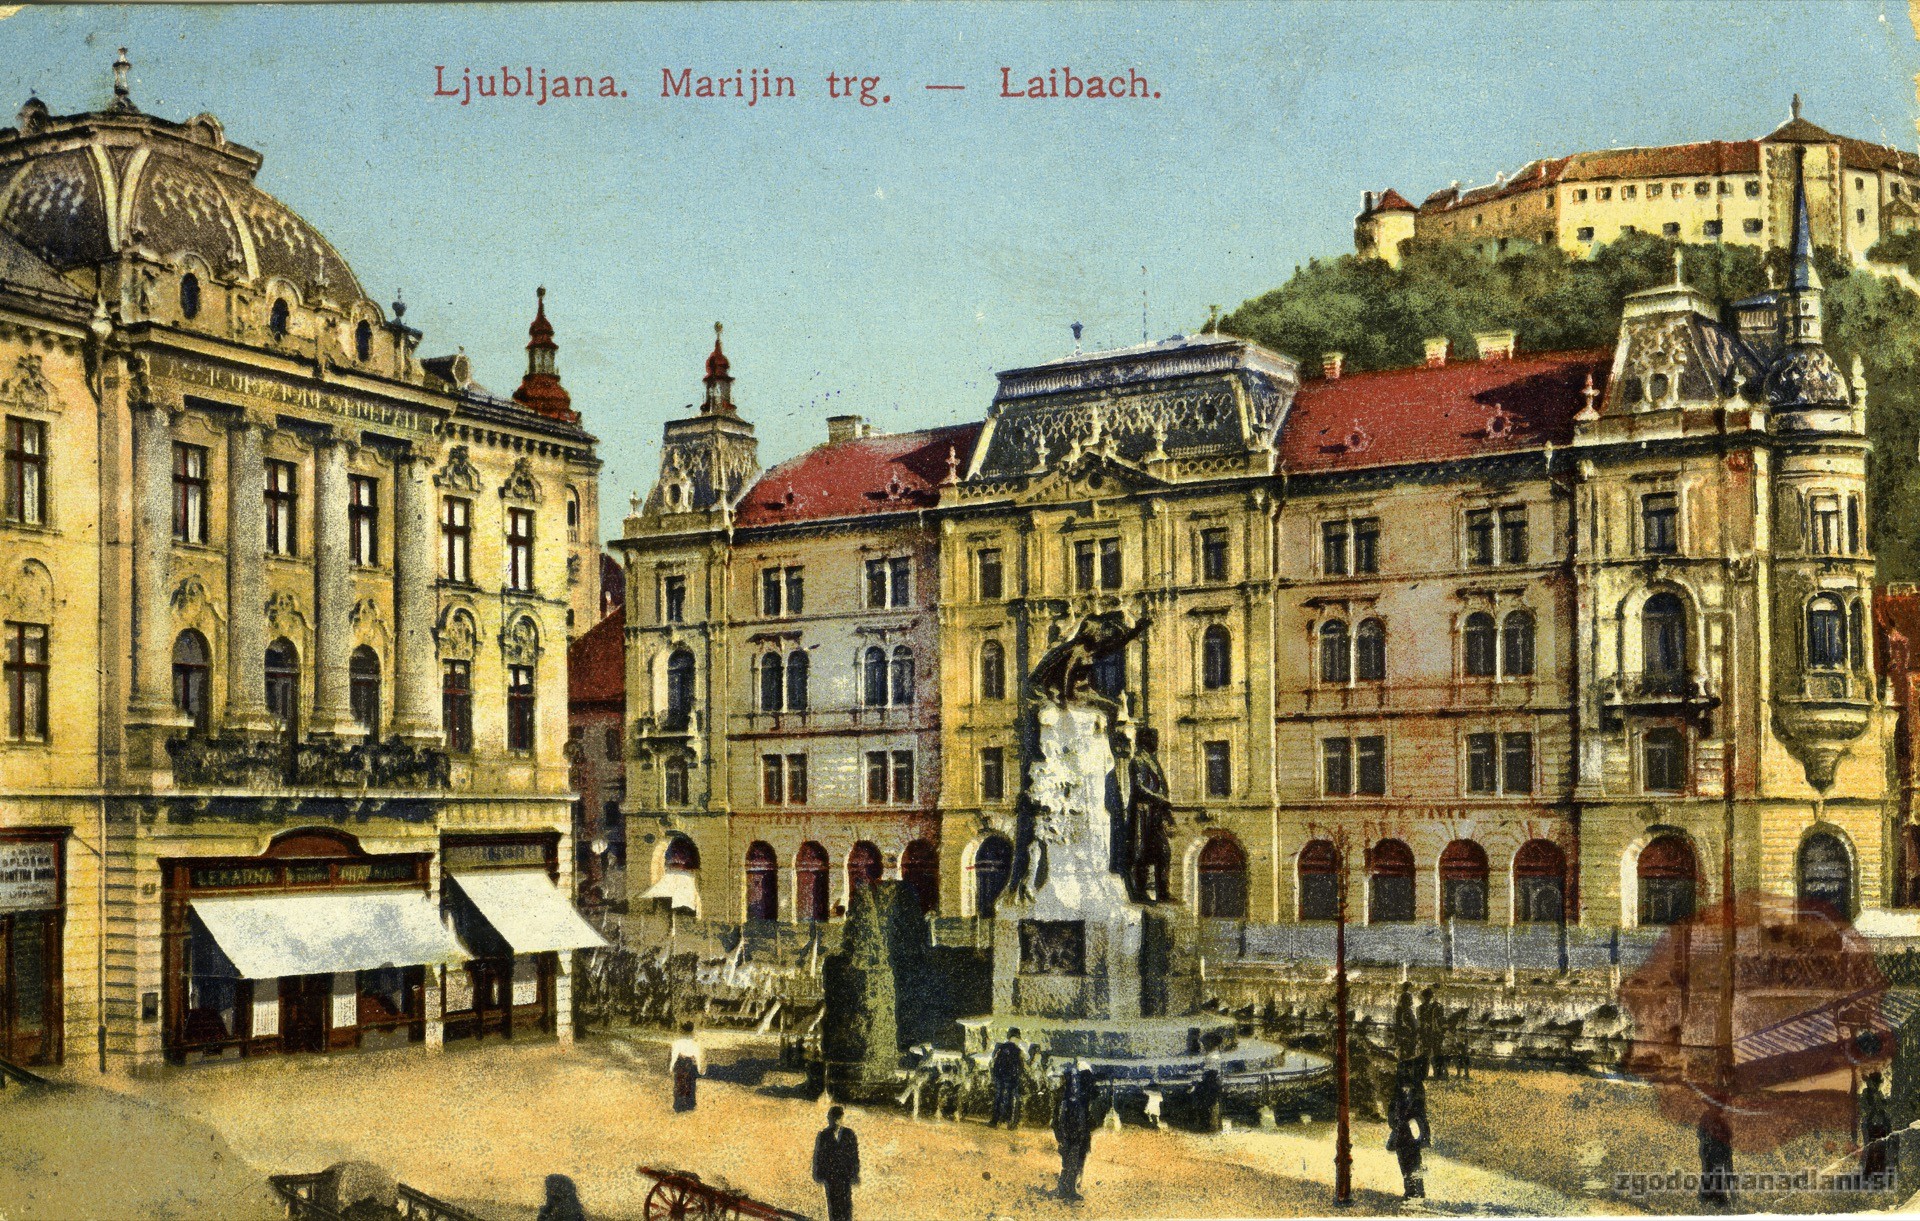 marijin_trg_prešernov_spomenik_prešernov_trg_kresija_ljubljana_1916